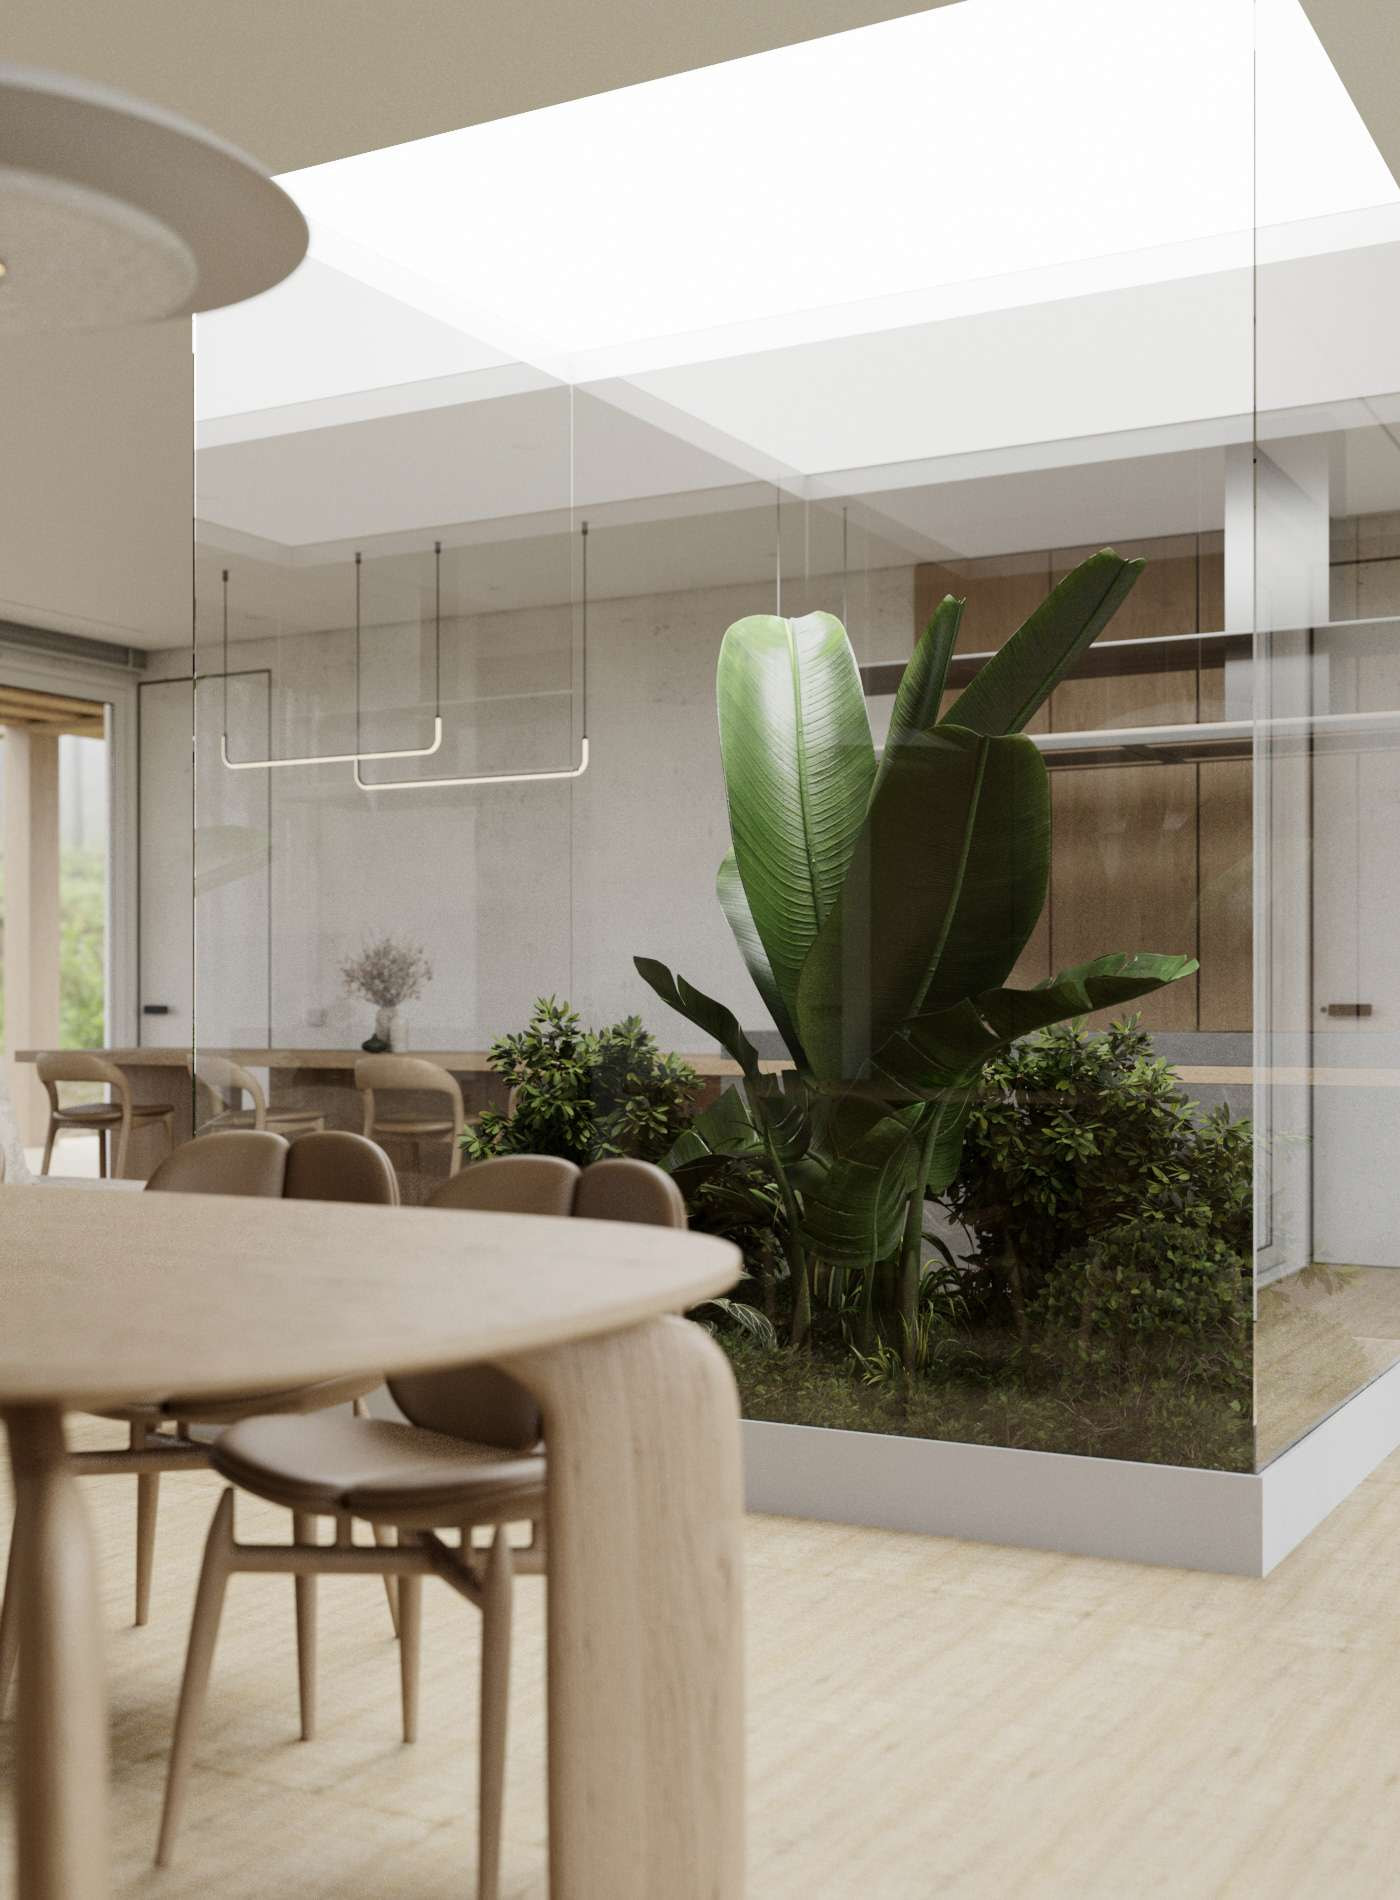 Trang trí nhà với cây xanh là đặc điểm nổi bật của phong cách Eco